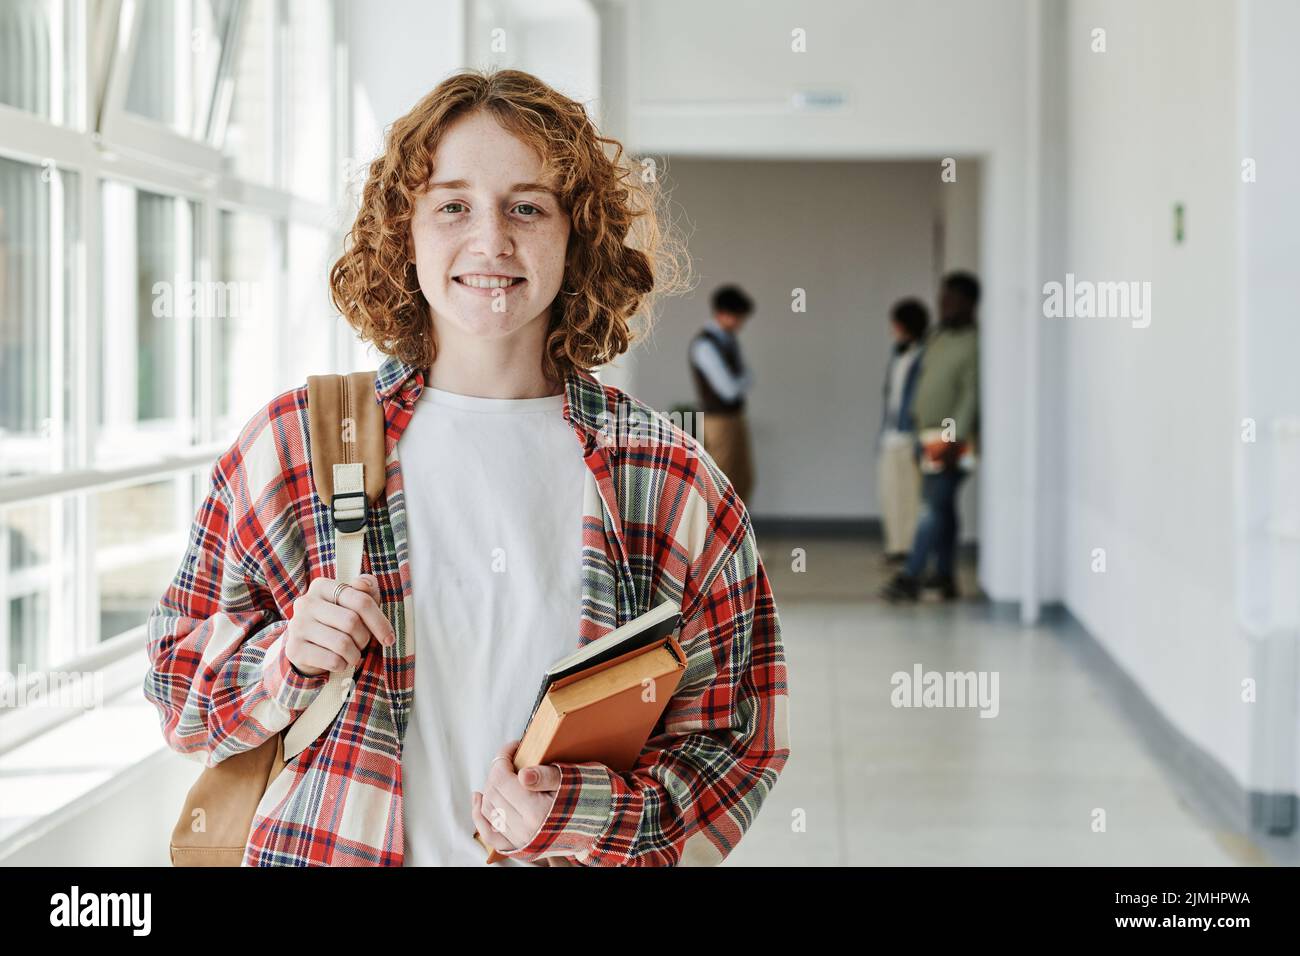 Nette, erfolgreiche Teenager-Studentin mit Büchern und Rucksack, die auf die Kamera schauen, während sie im Flur gegen eine Gruppe von Klassenkameraden steht Stockfoto